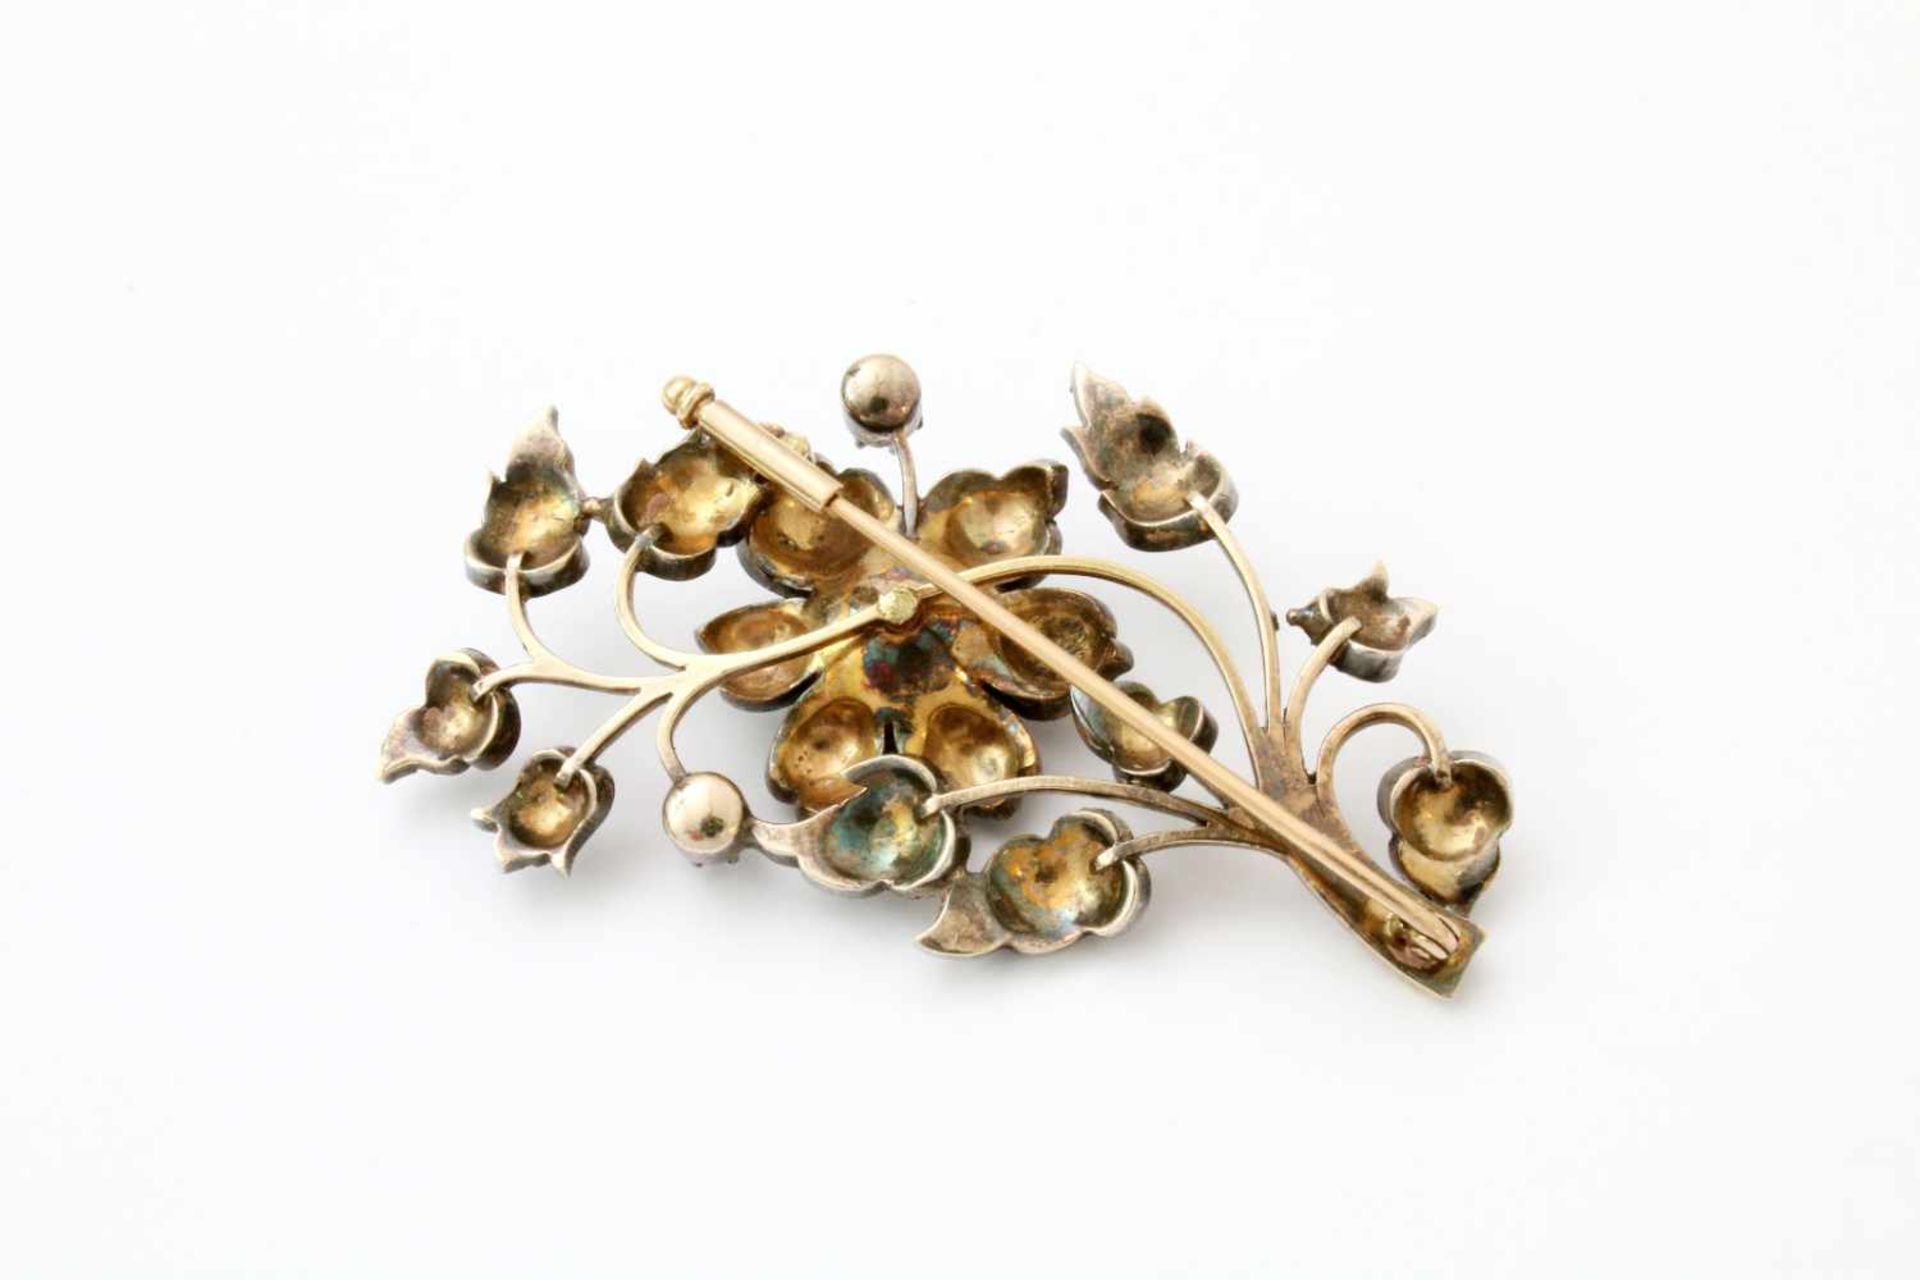 Rotgold-Silber Brosche mit Steinbesatz - Jugendstil RG 333, Fassungen Silber, Blütenzweig besetzt - Bild 4 aus 4